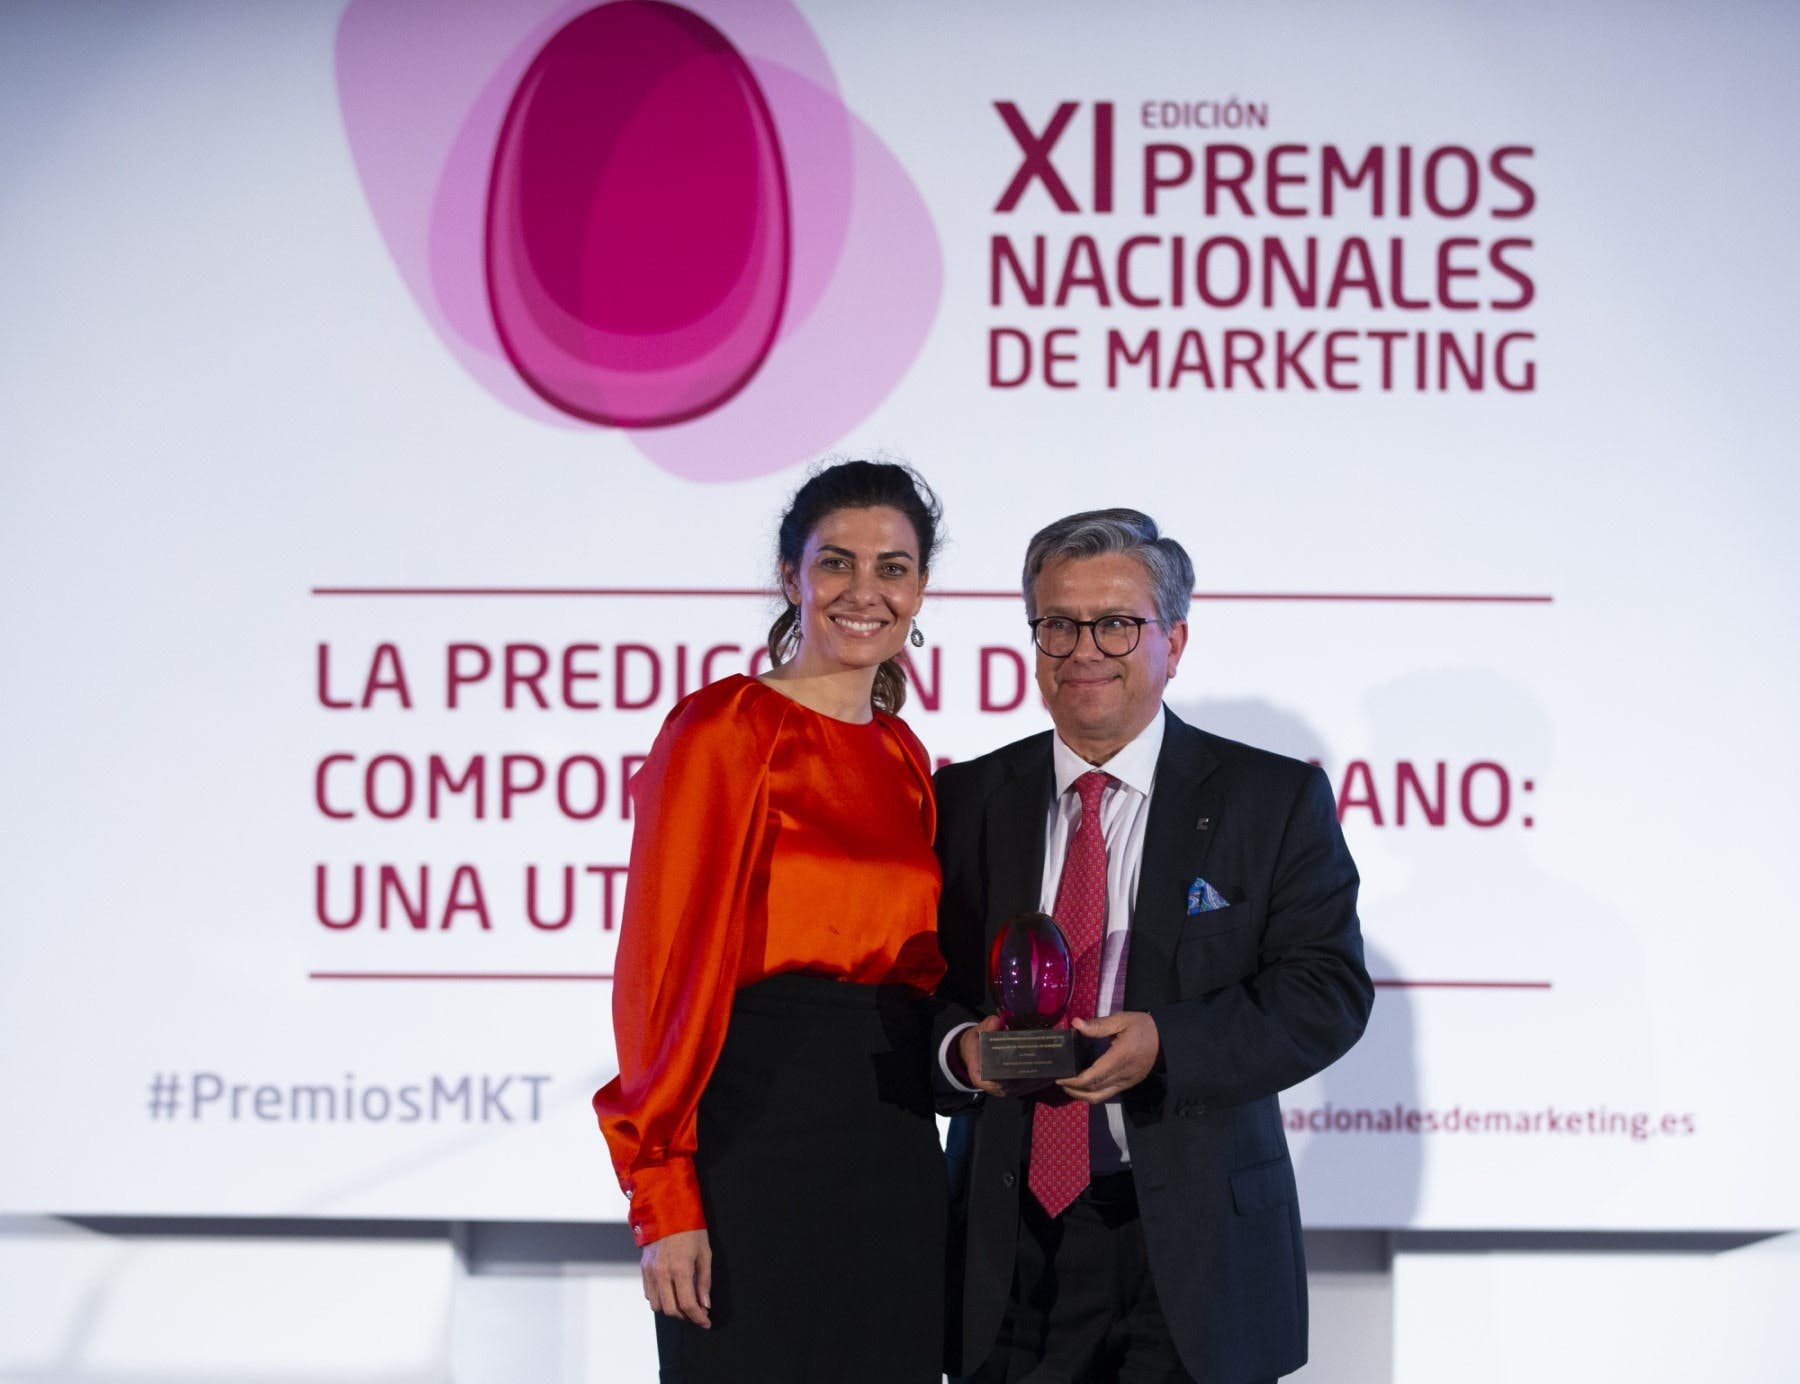 Santiago Alfonso Award